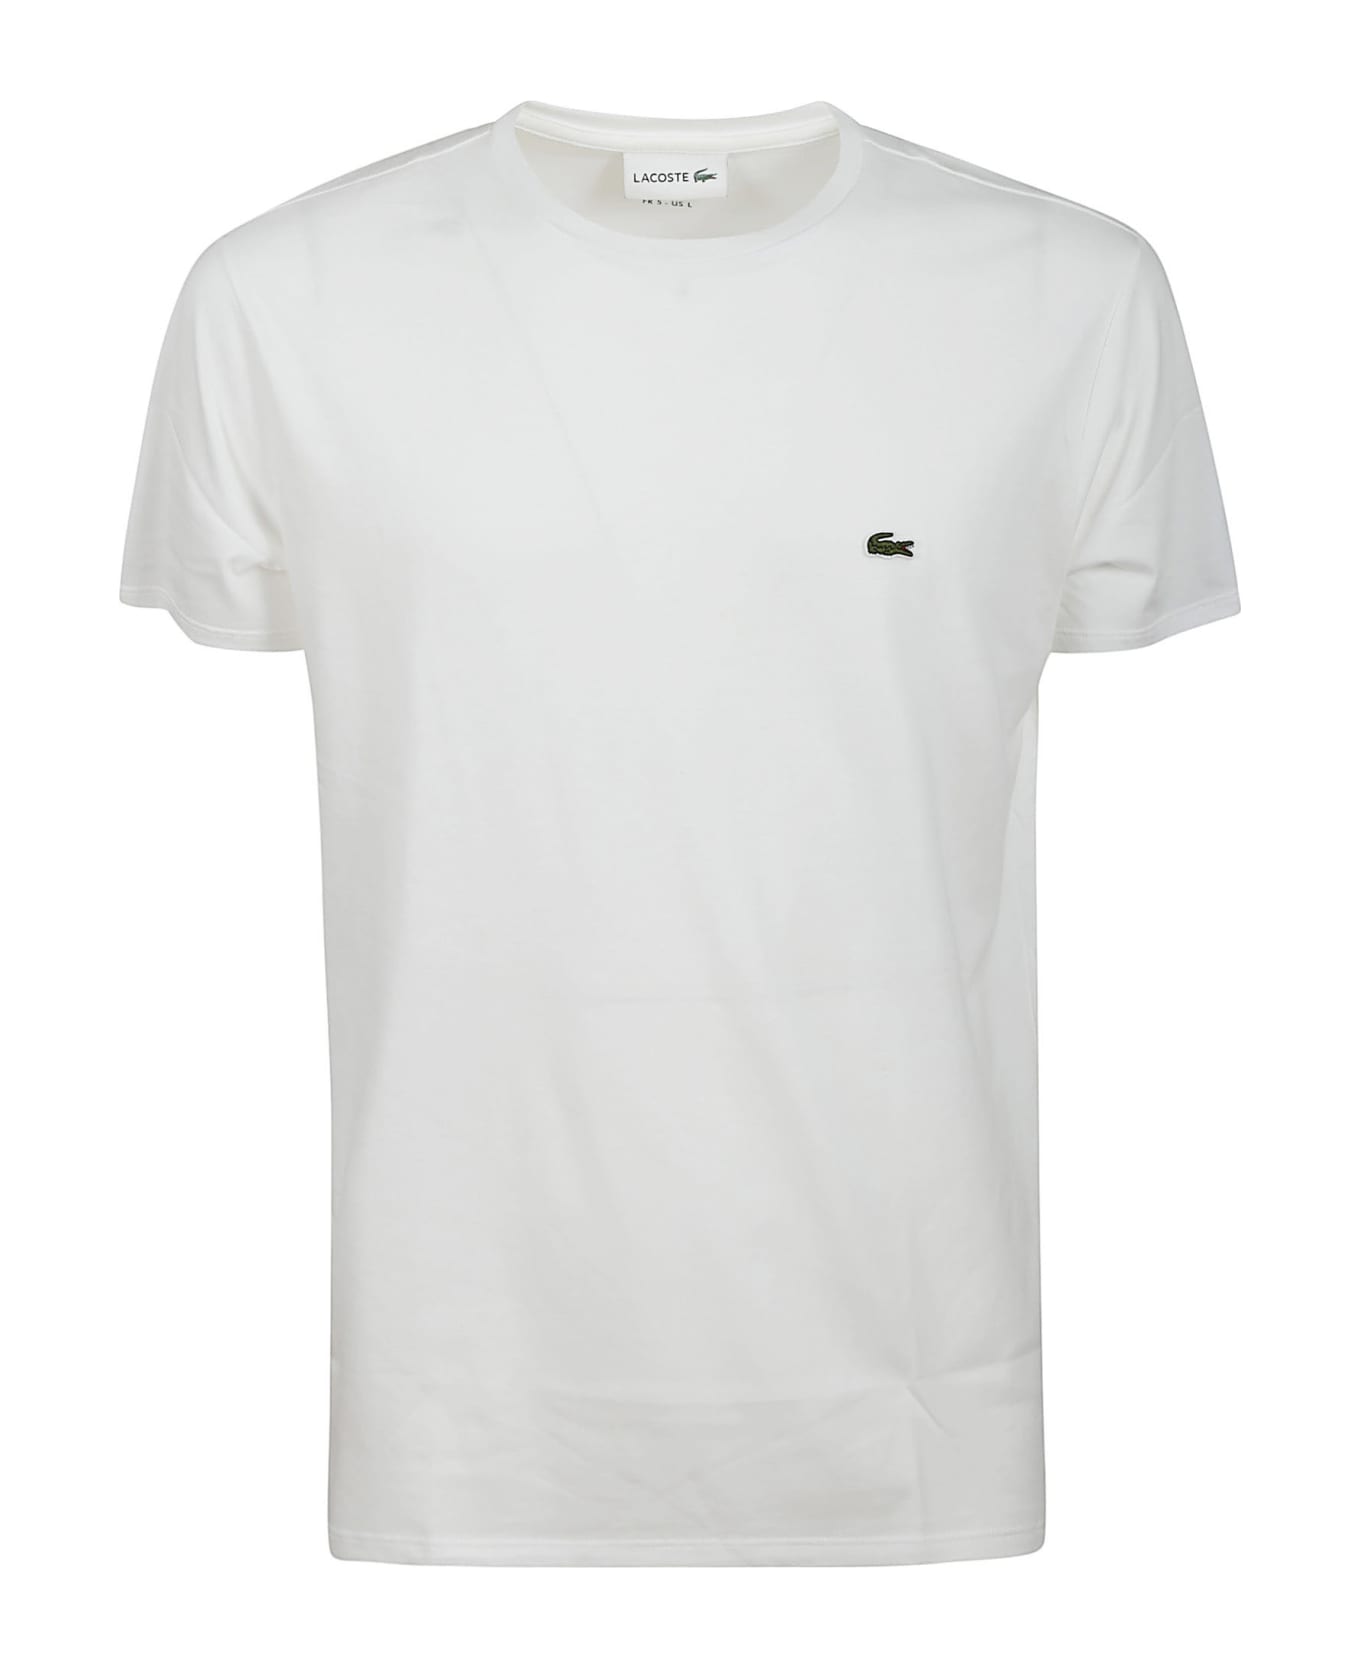 Lacoste Tshirt - White シャツ